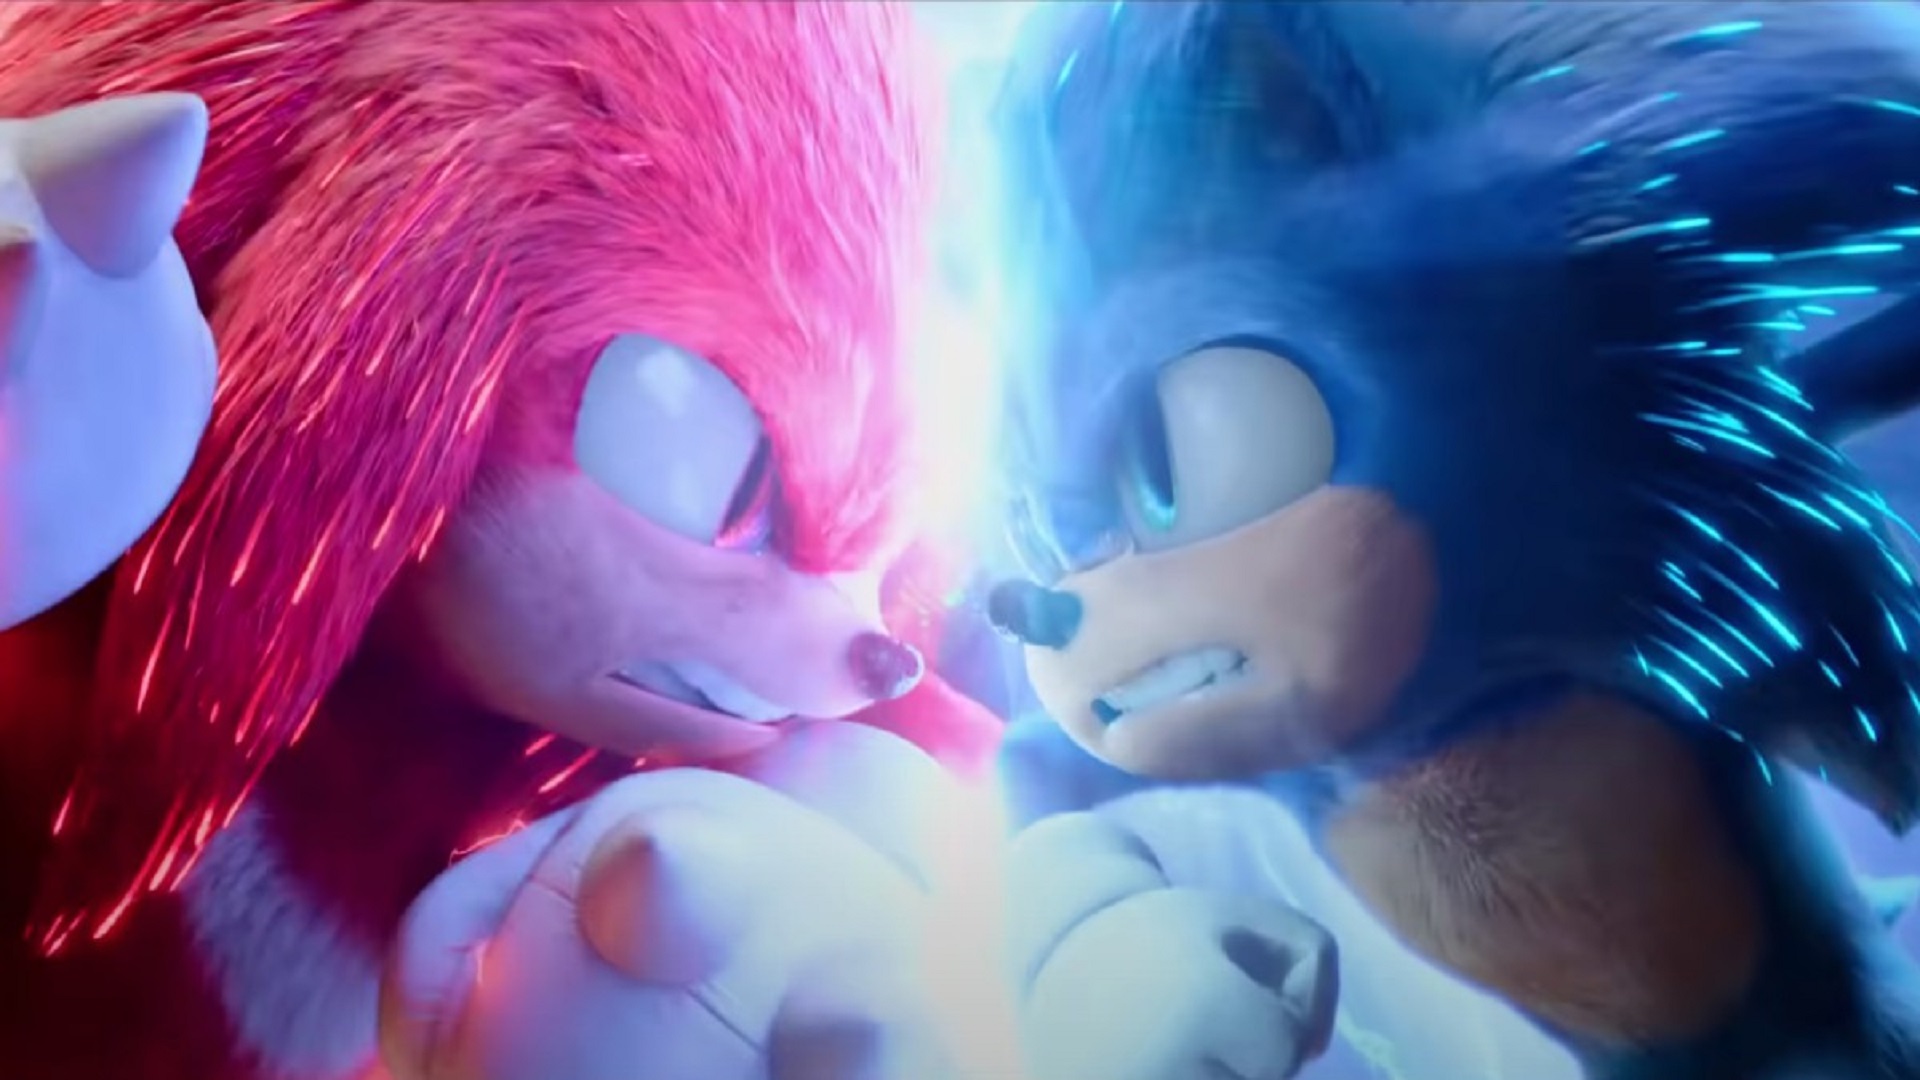 مبارزه سونیک و ناکلز در تریلر جدید فیلم Sonic the Hedgehog 2